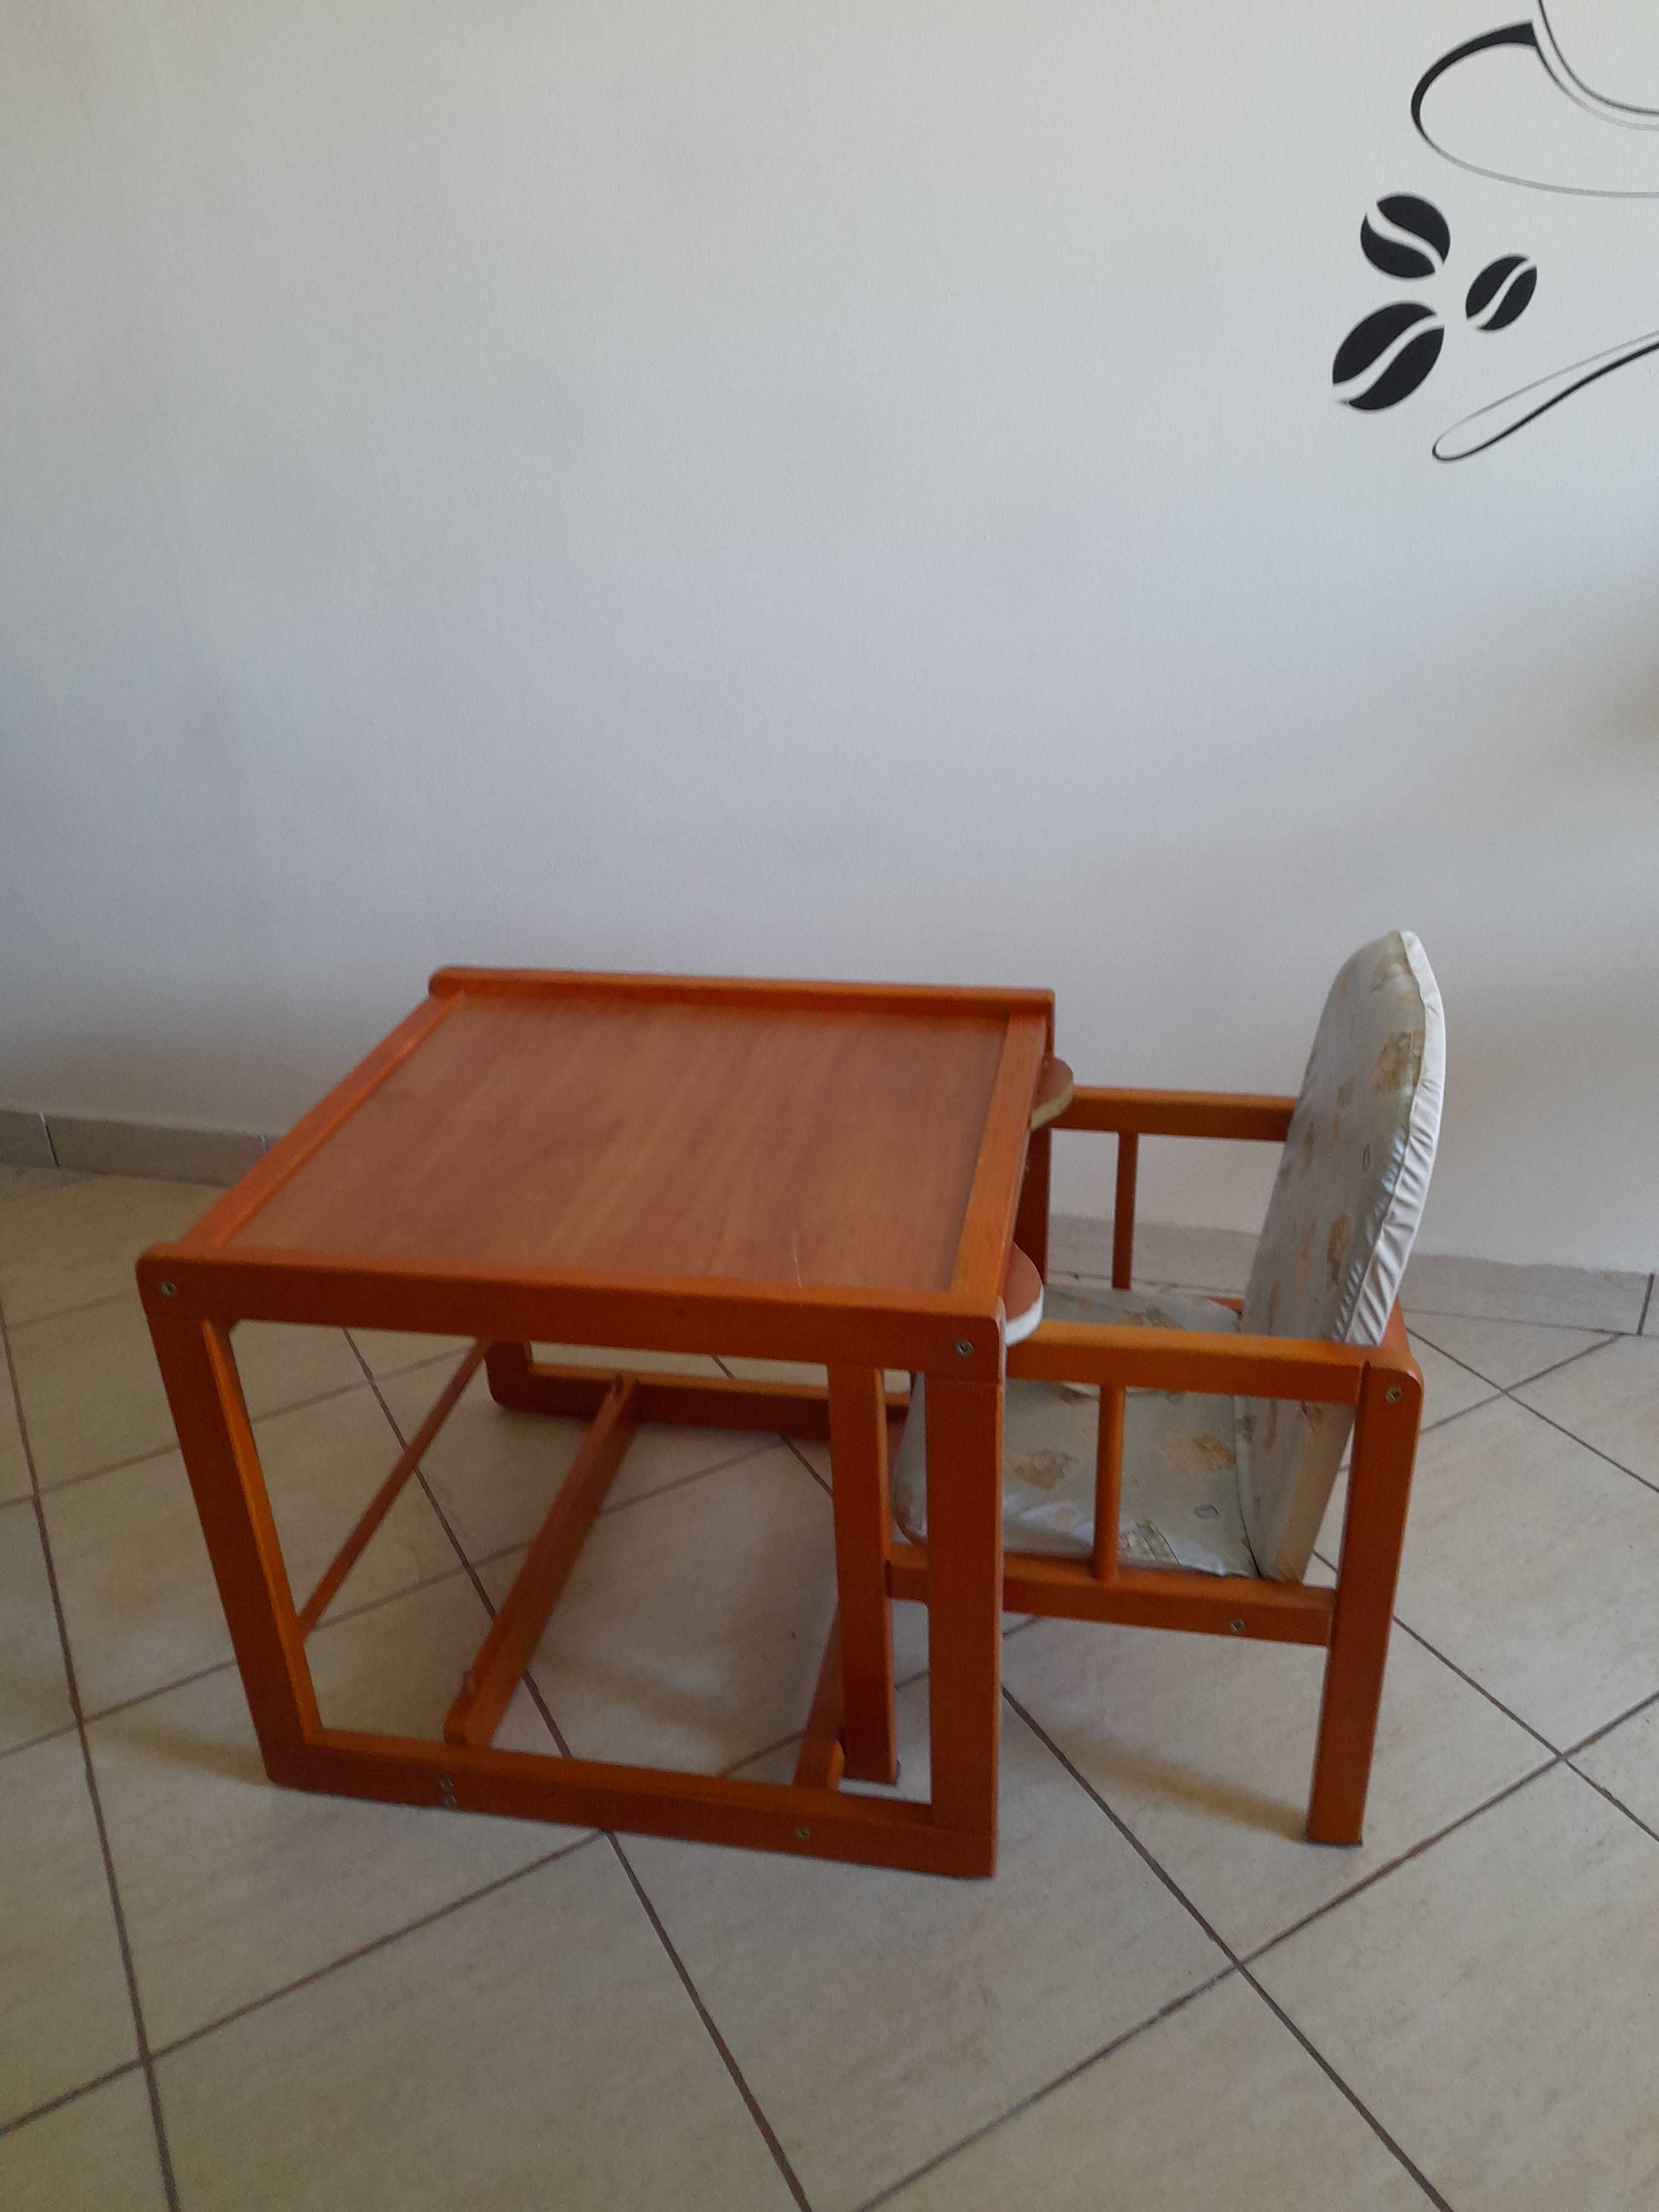 Krzesełko drewniane do karmienia